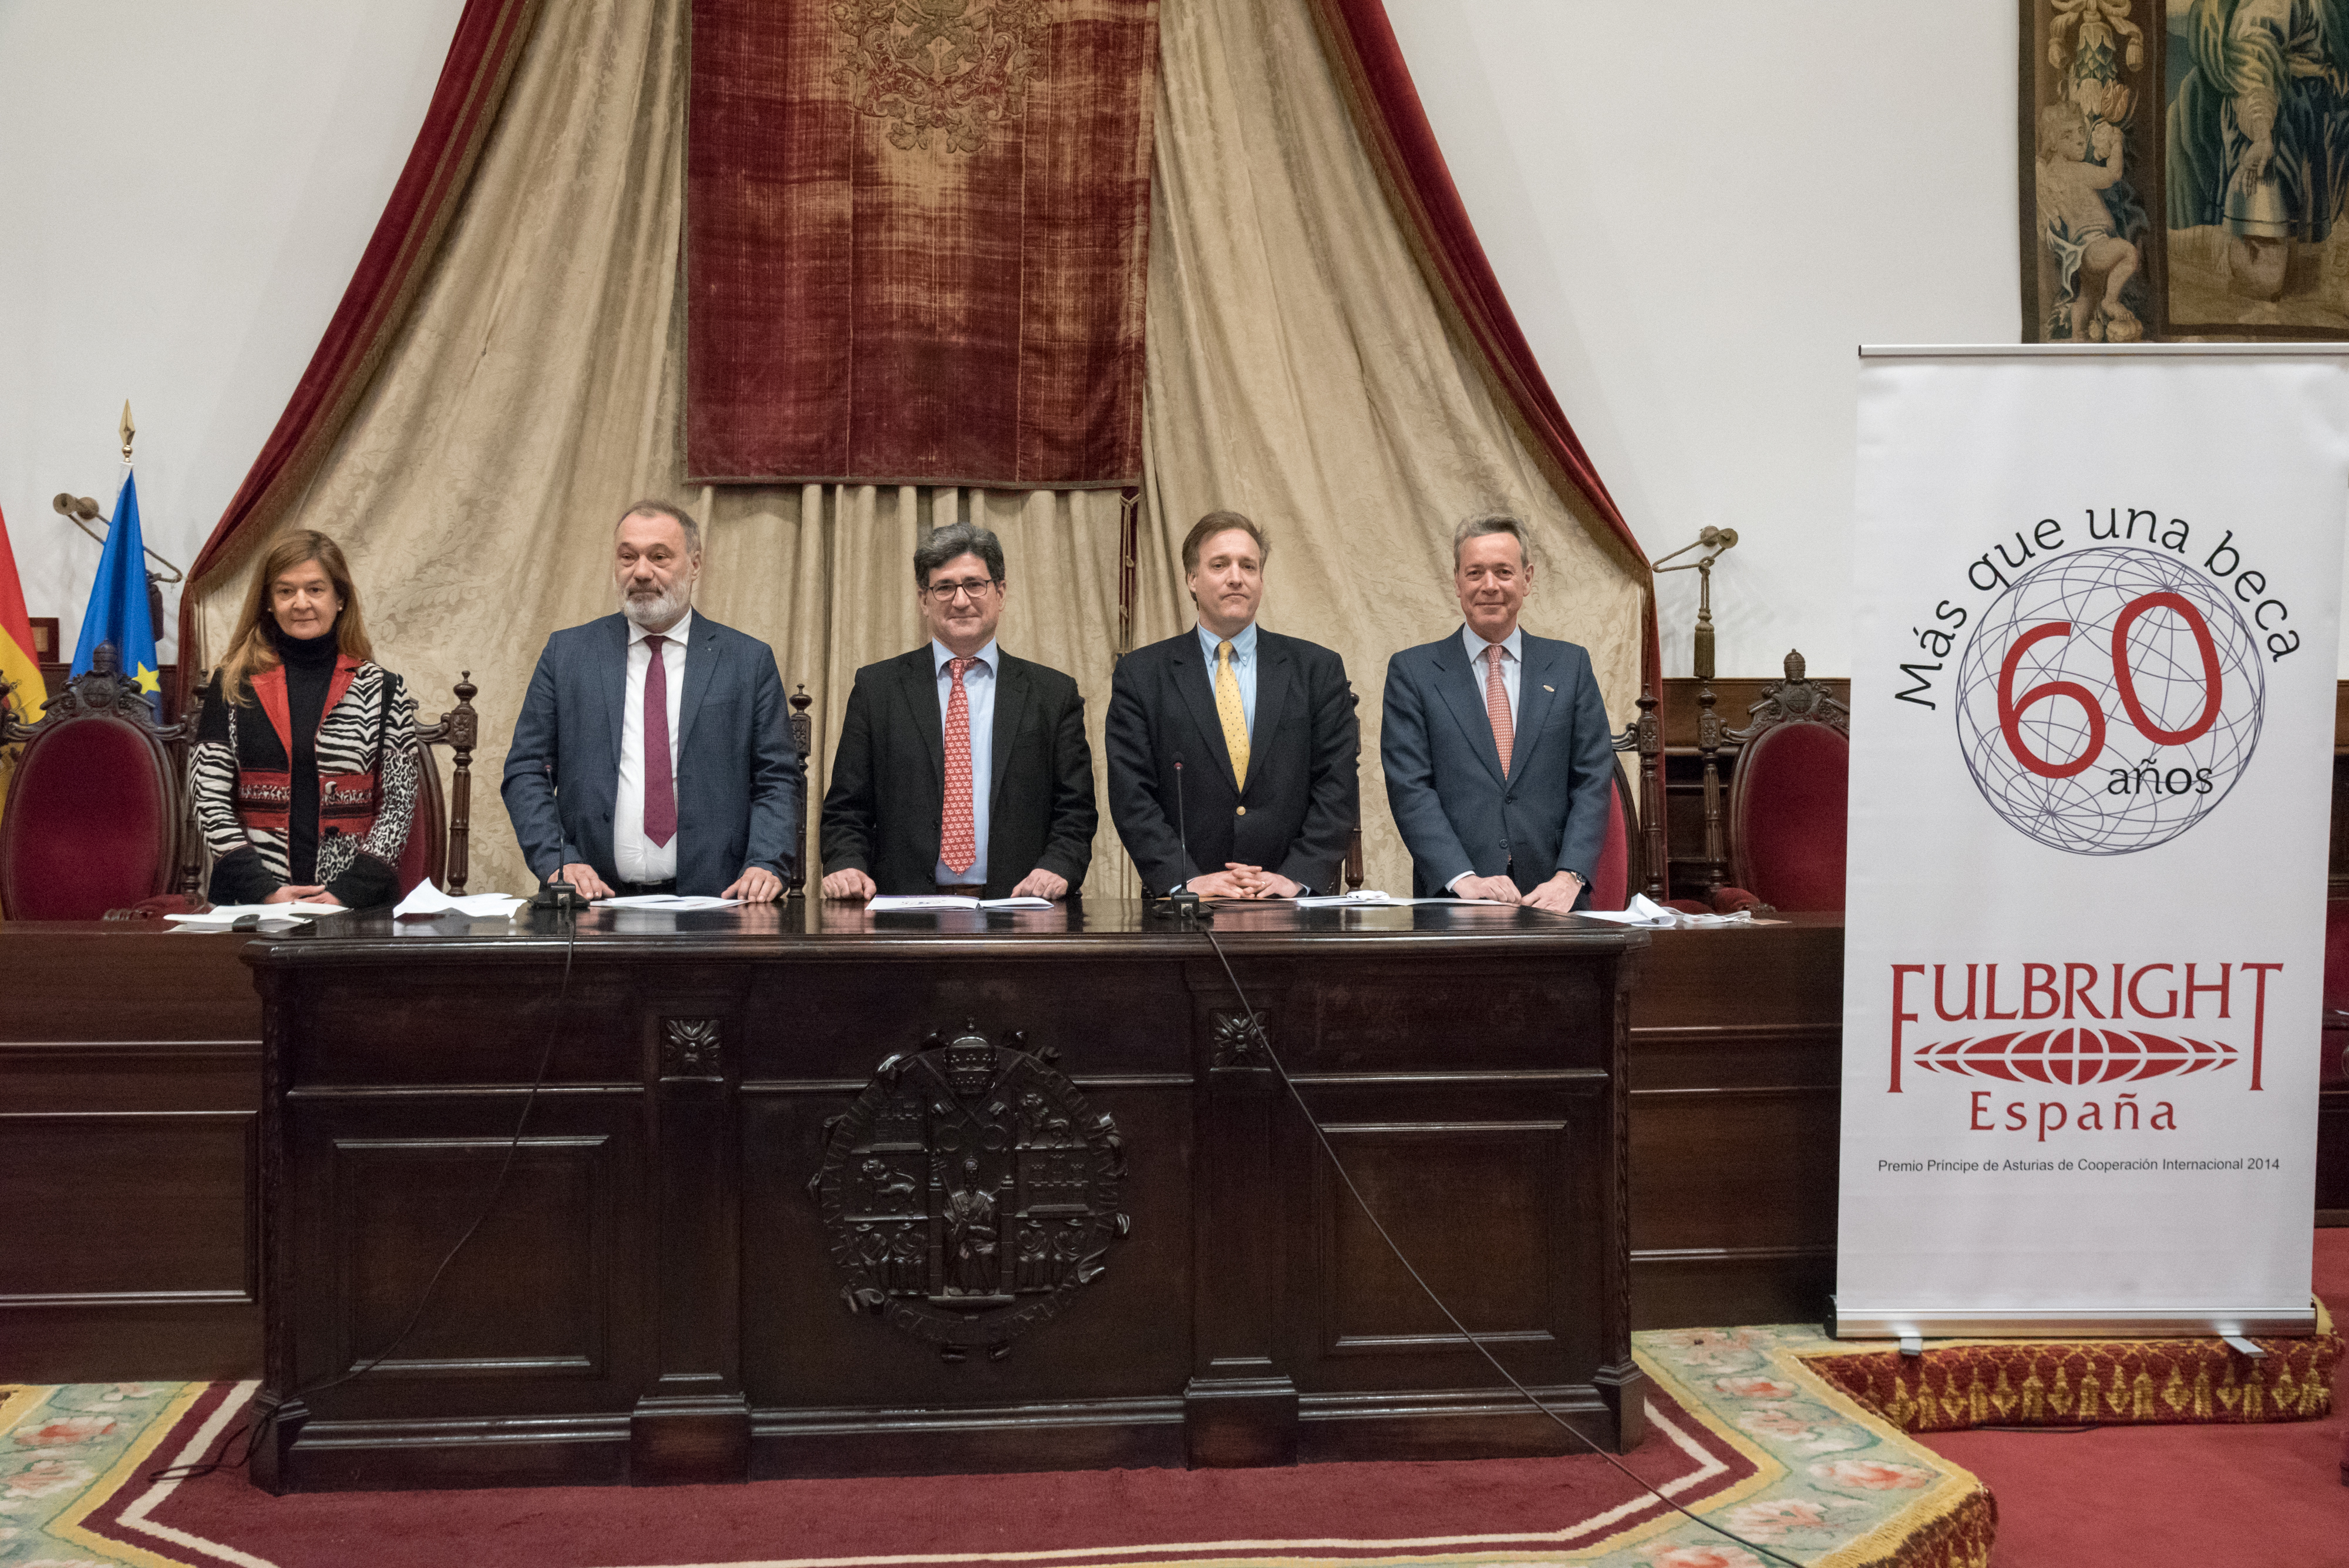 La Universidad de Salamanca emprende nuevas colaboraciones con la Comisión Fulbright